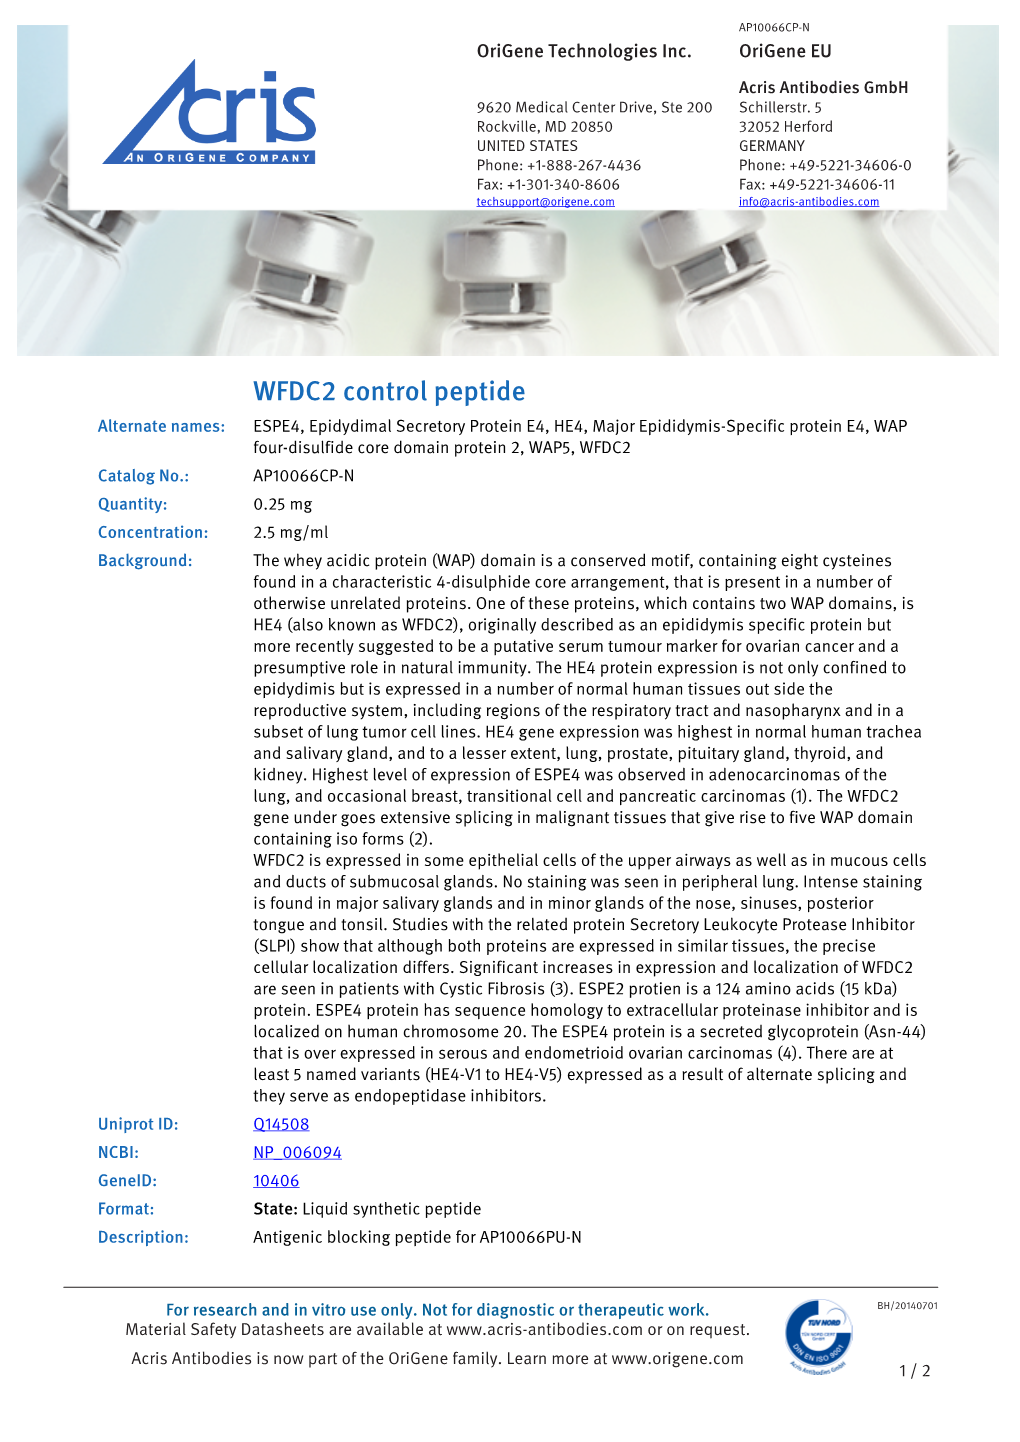 WFDC2 Control Peptide